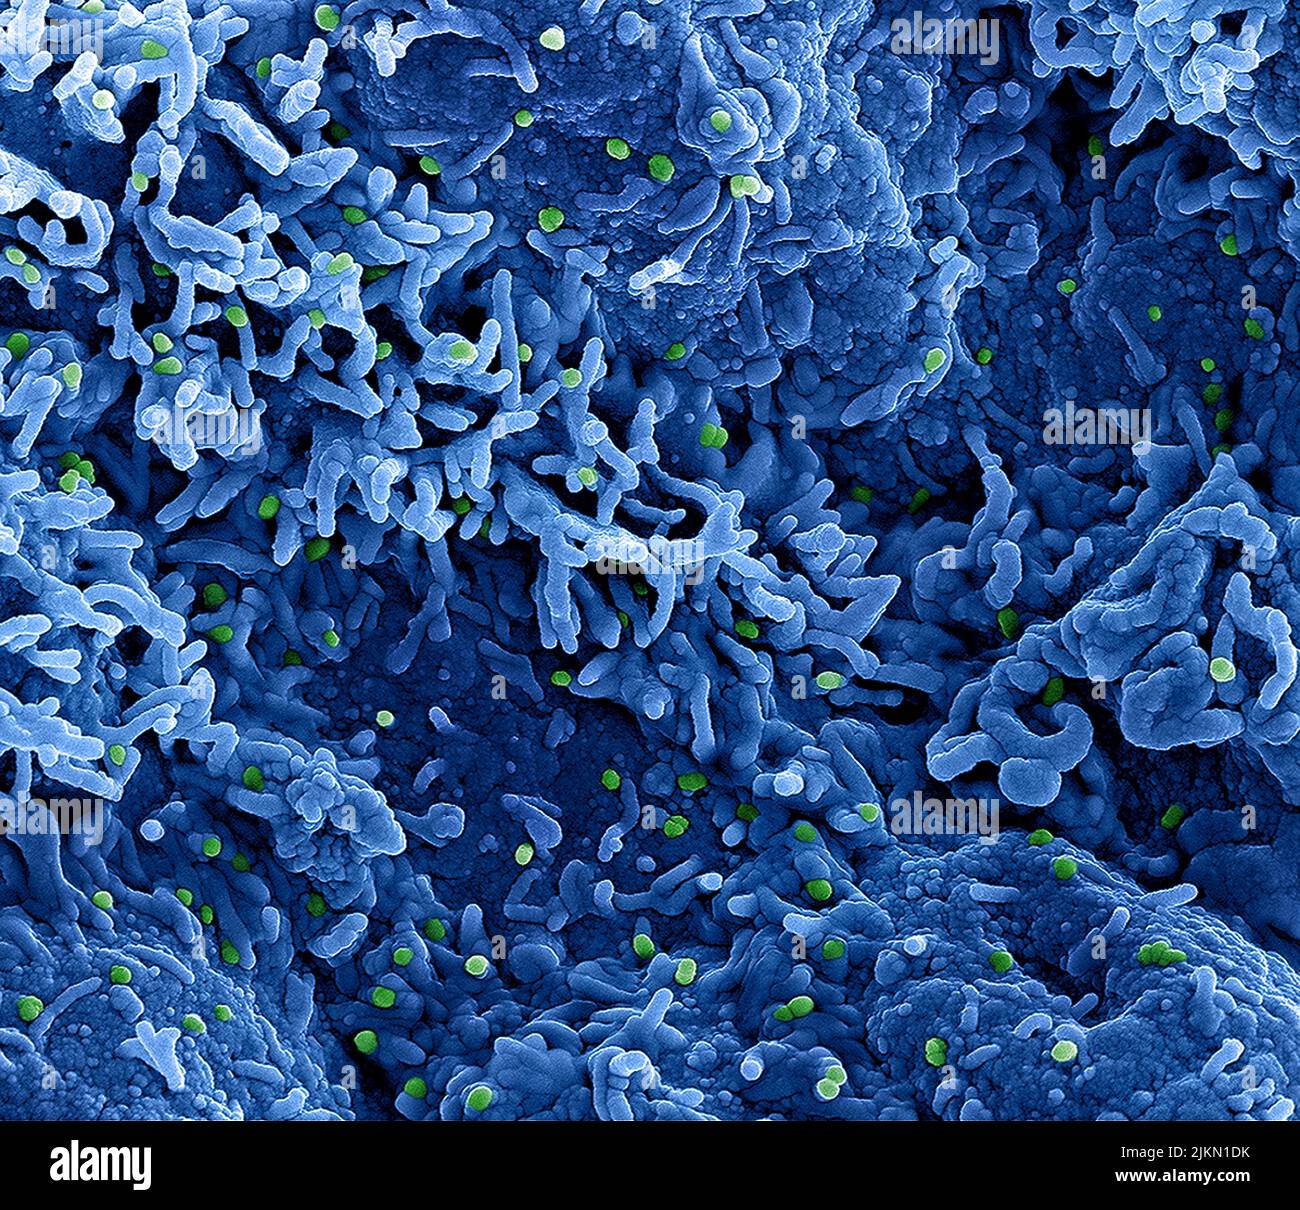 Virus de la viruela del simio Micrografía electrónica coloreada de las partículas de viruela del simio encontradas en una célula infectada , cultivada en el laboratorio. Imagen capturada y con color mejorado en la Instalación Integrada de Investigación NIAID (IRF) en Fort Detrick, Maryland. Crédito: NIAID Foto de stock